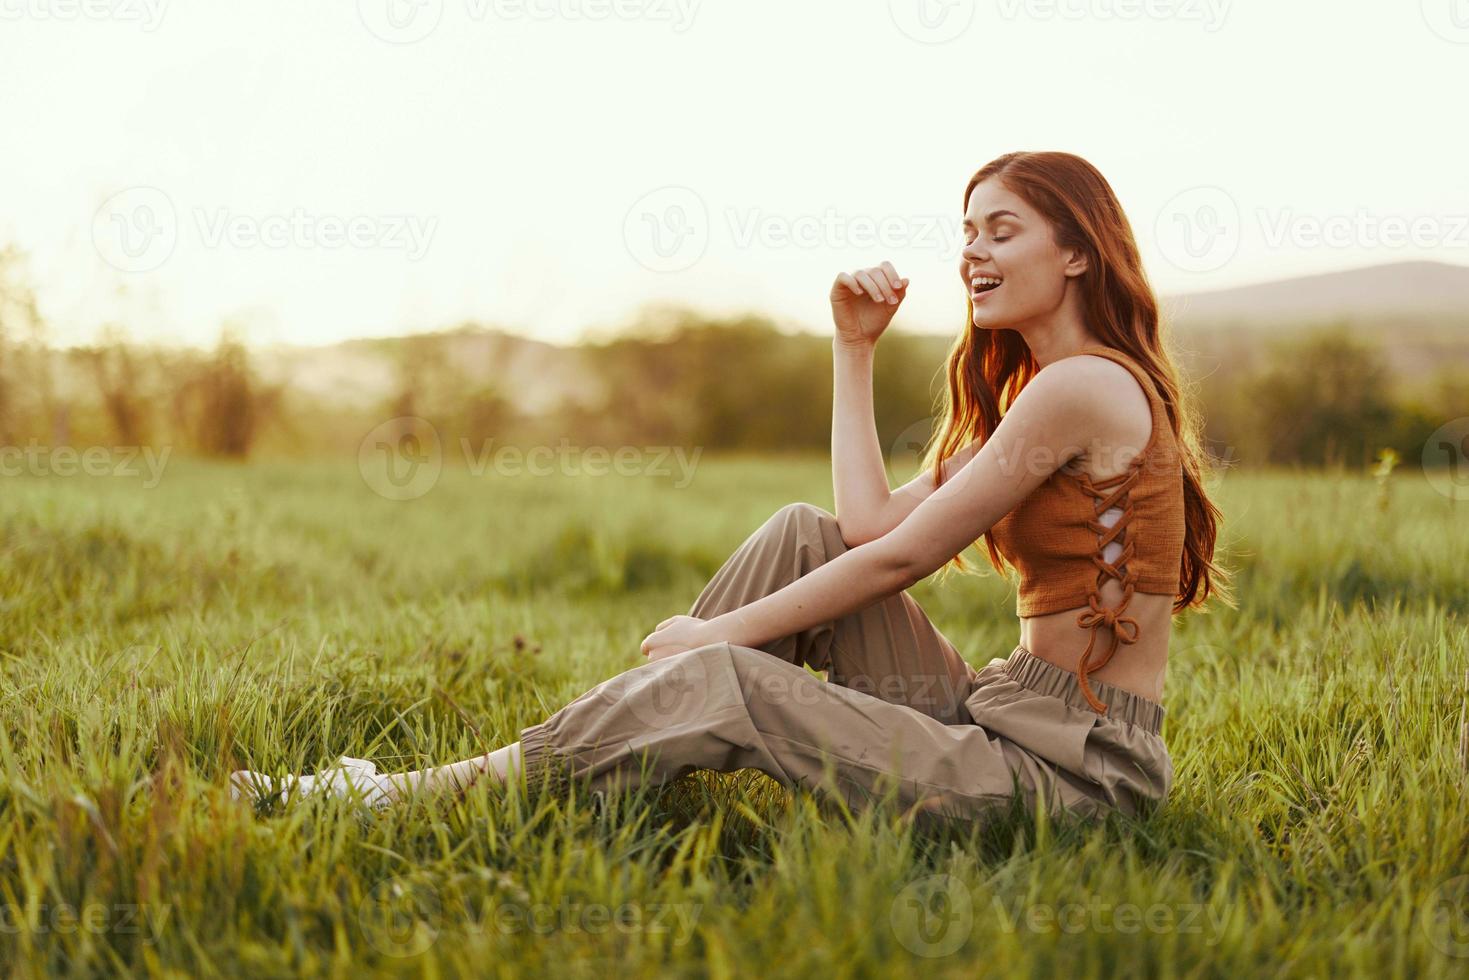 un mujer se sienta en el verde joven Fresco césped en el abierto aire y se ríe y sonrisas felizmente en el puesta de sol luz, su volador rojo pelo revoloteando en el viento foto